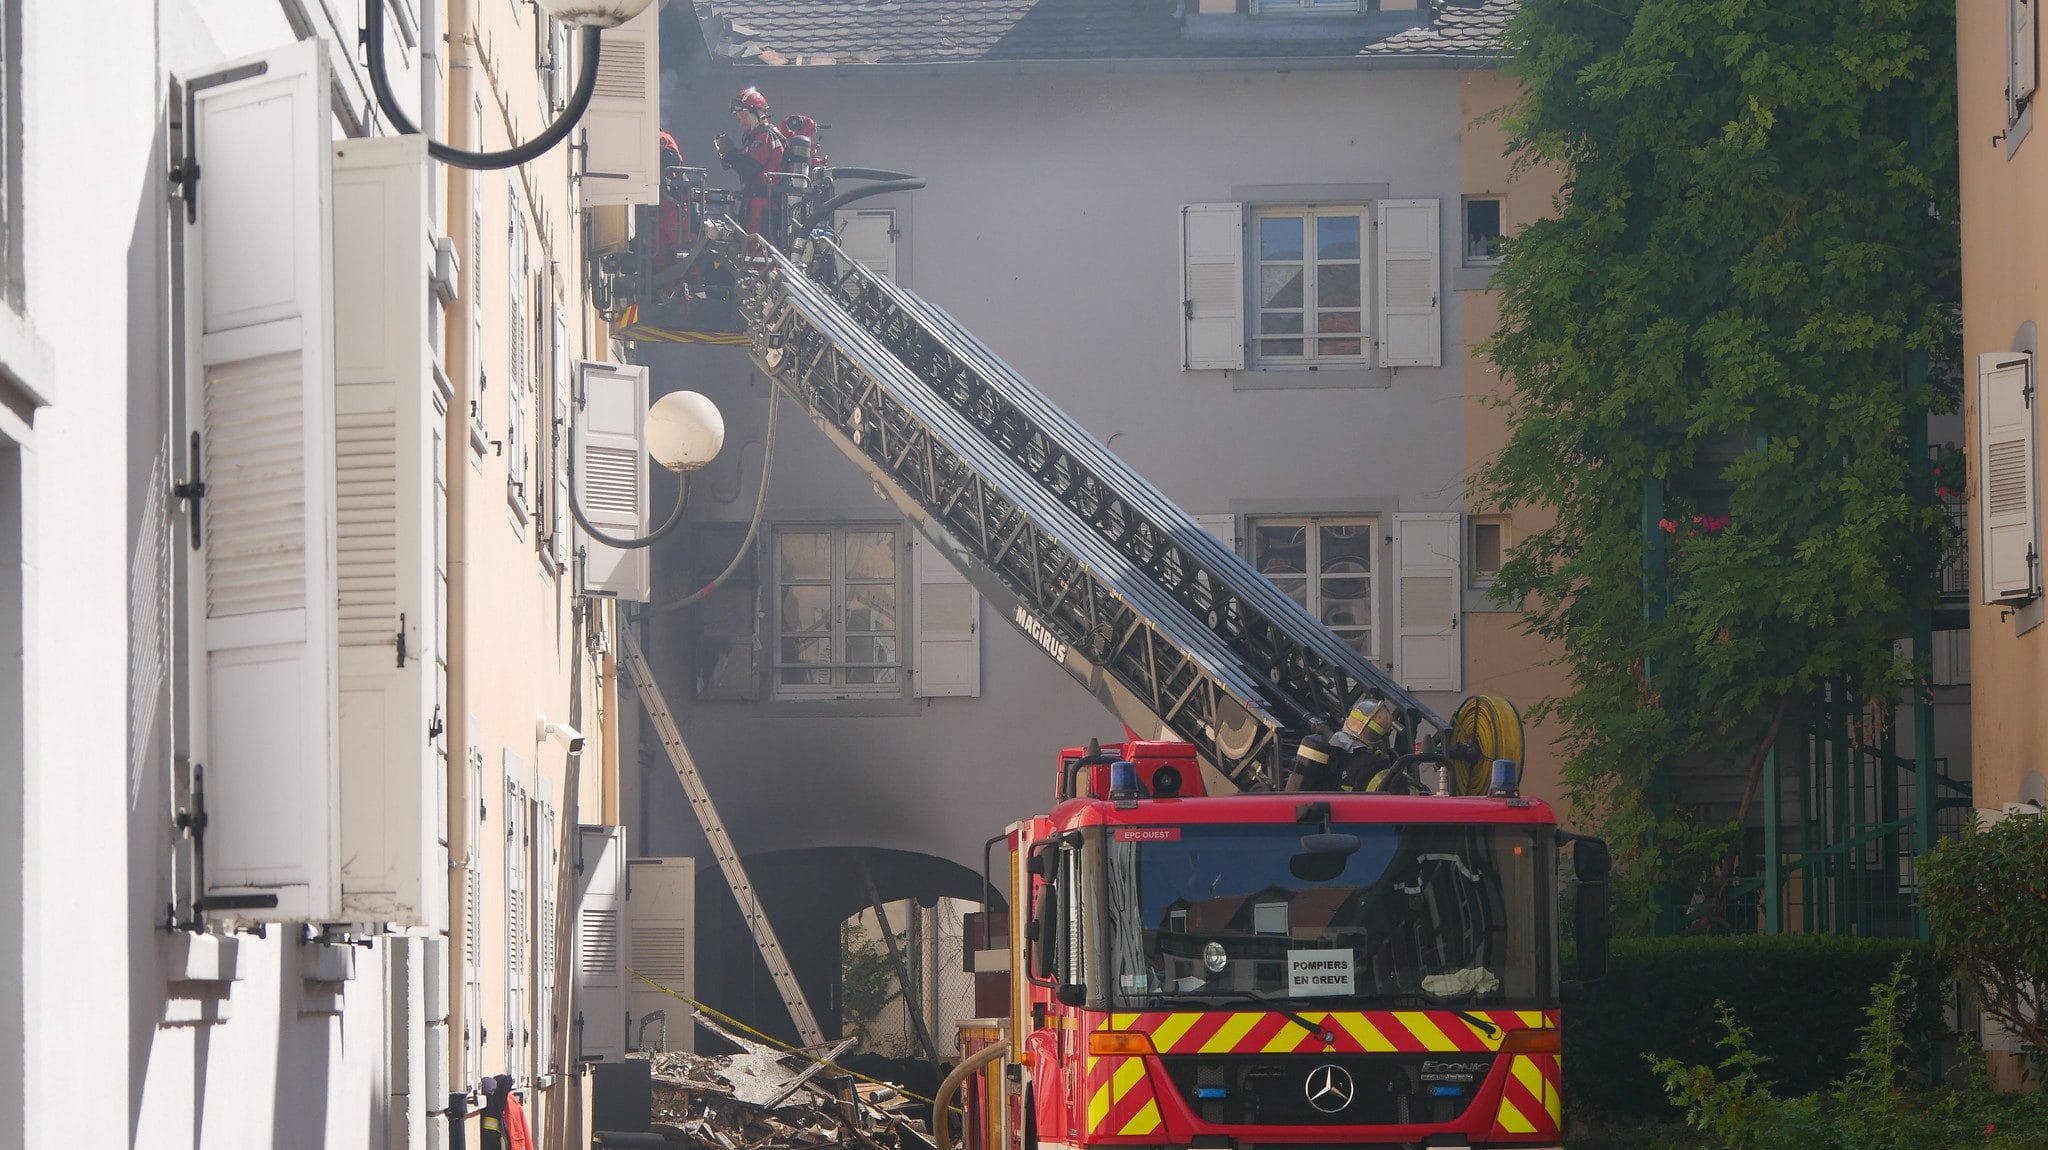 Incendie à Schiltigheim : un suspect avoue, le motif raciste non-établi